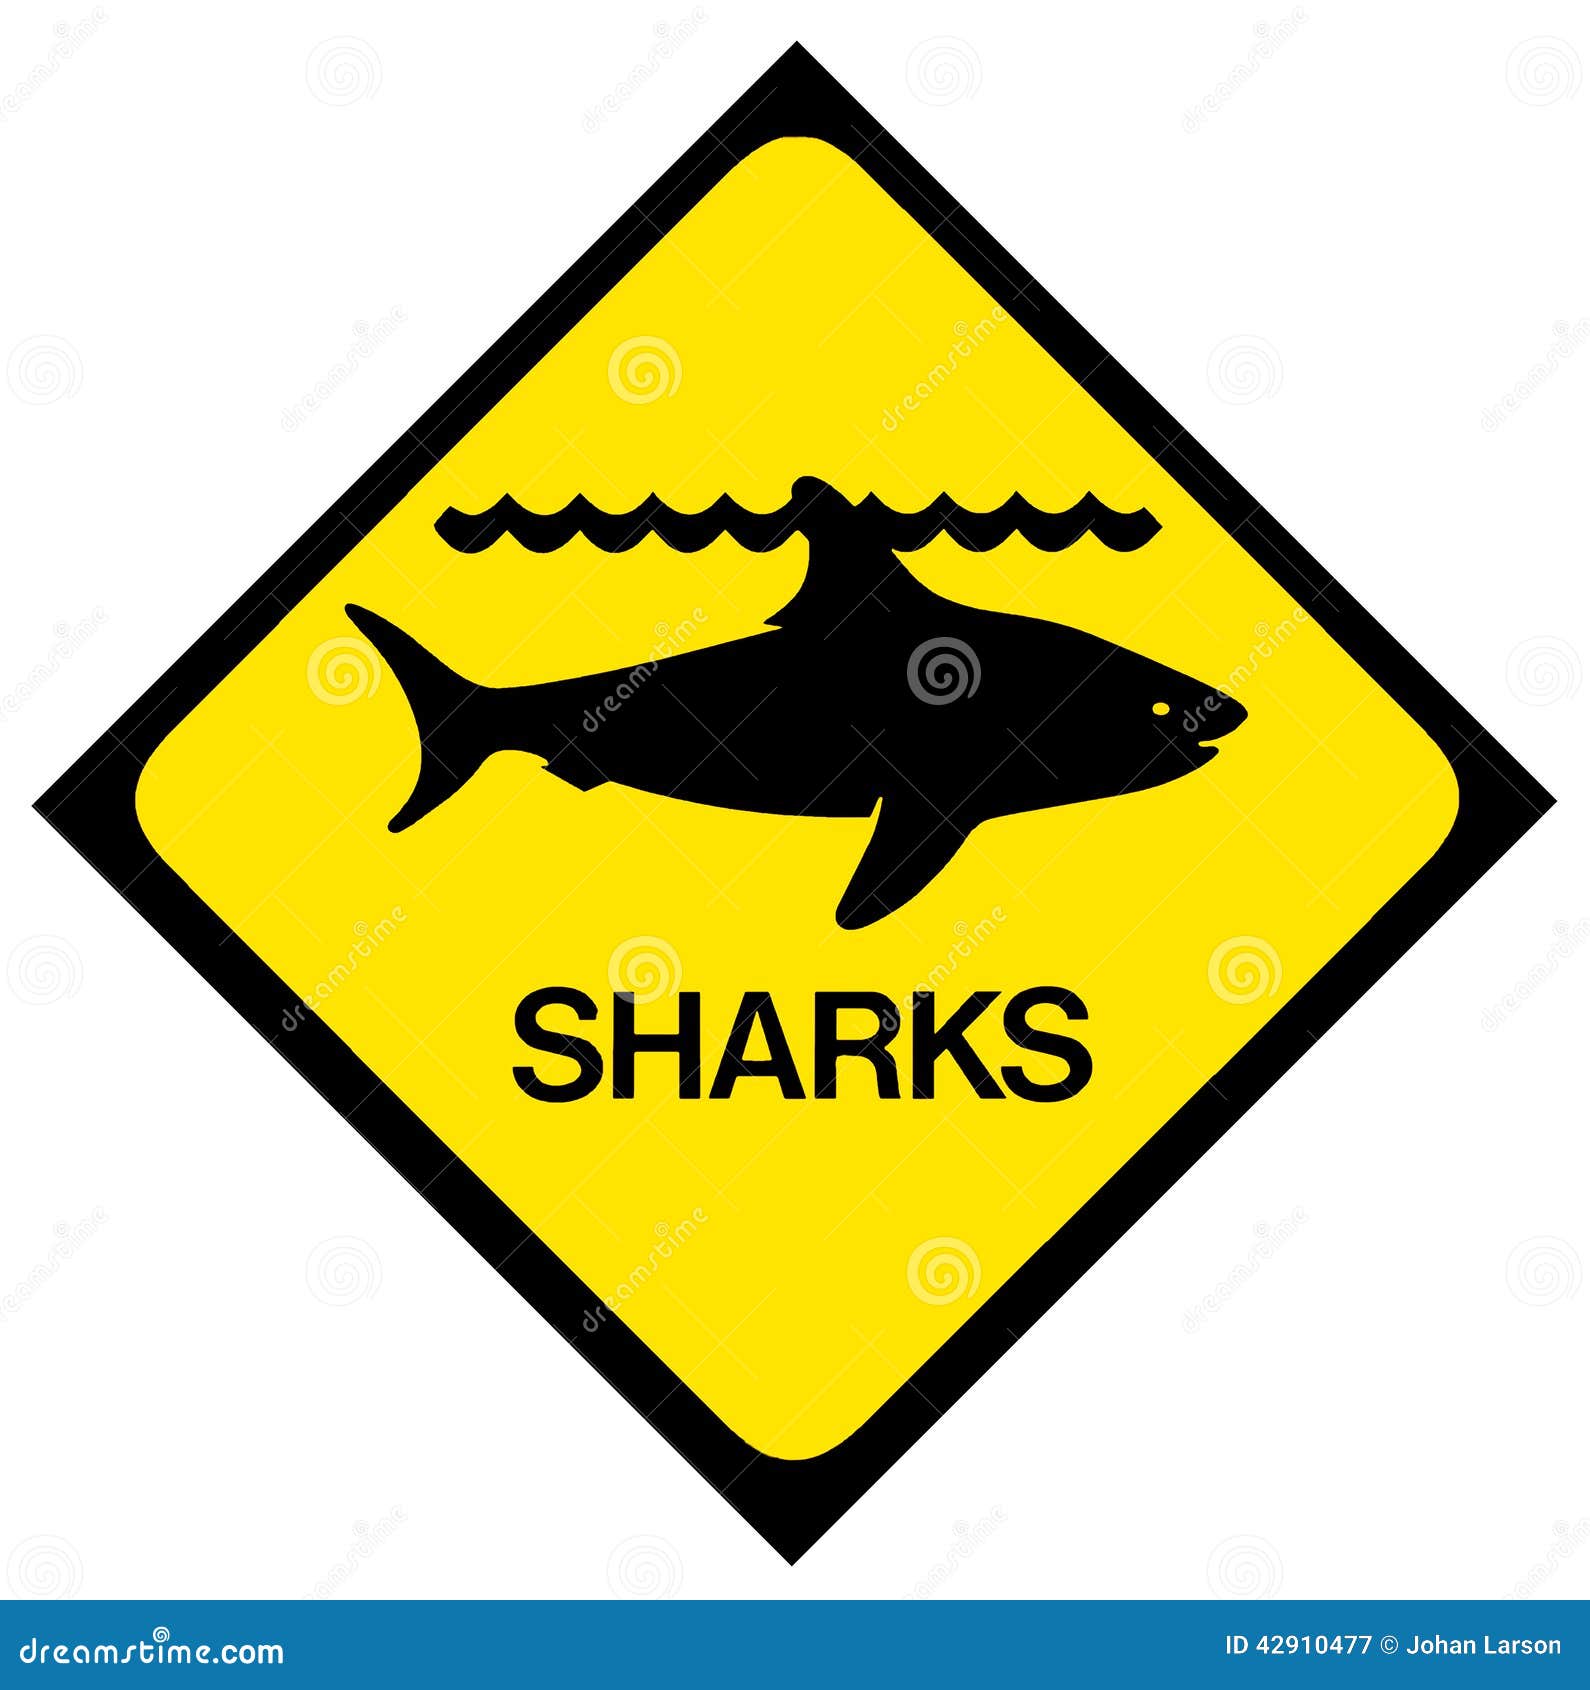 Shark warning sign stock illustration. Illustration of attack - 42910477